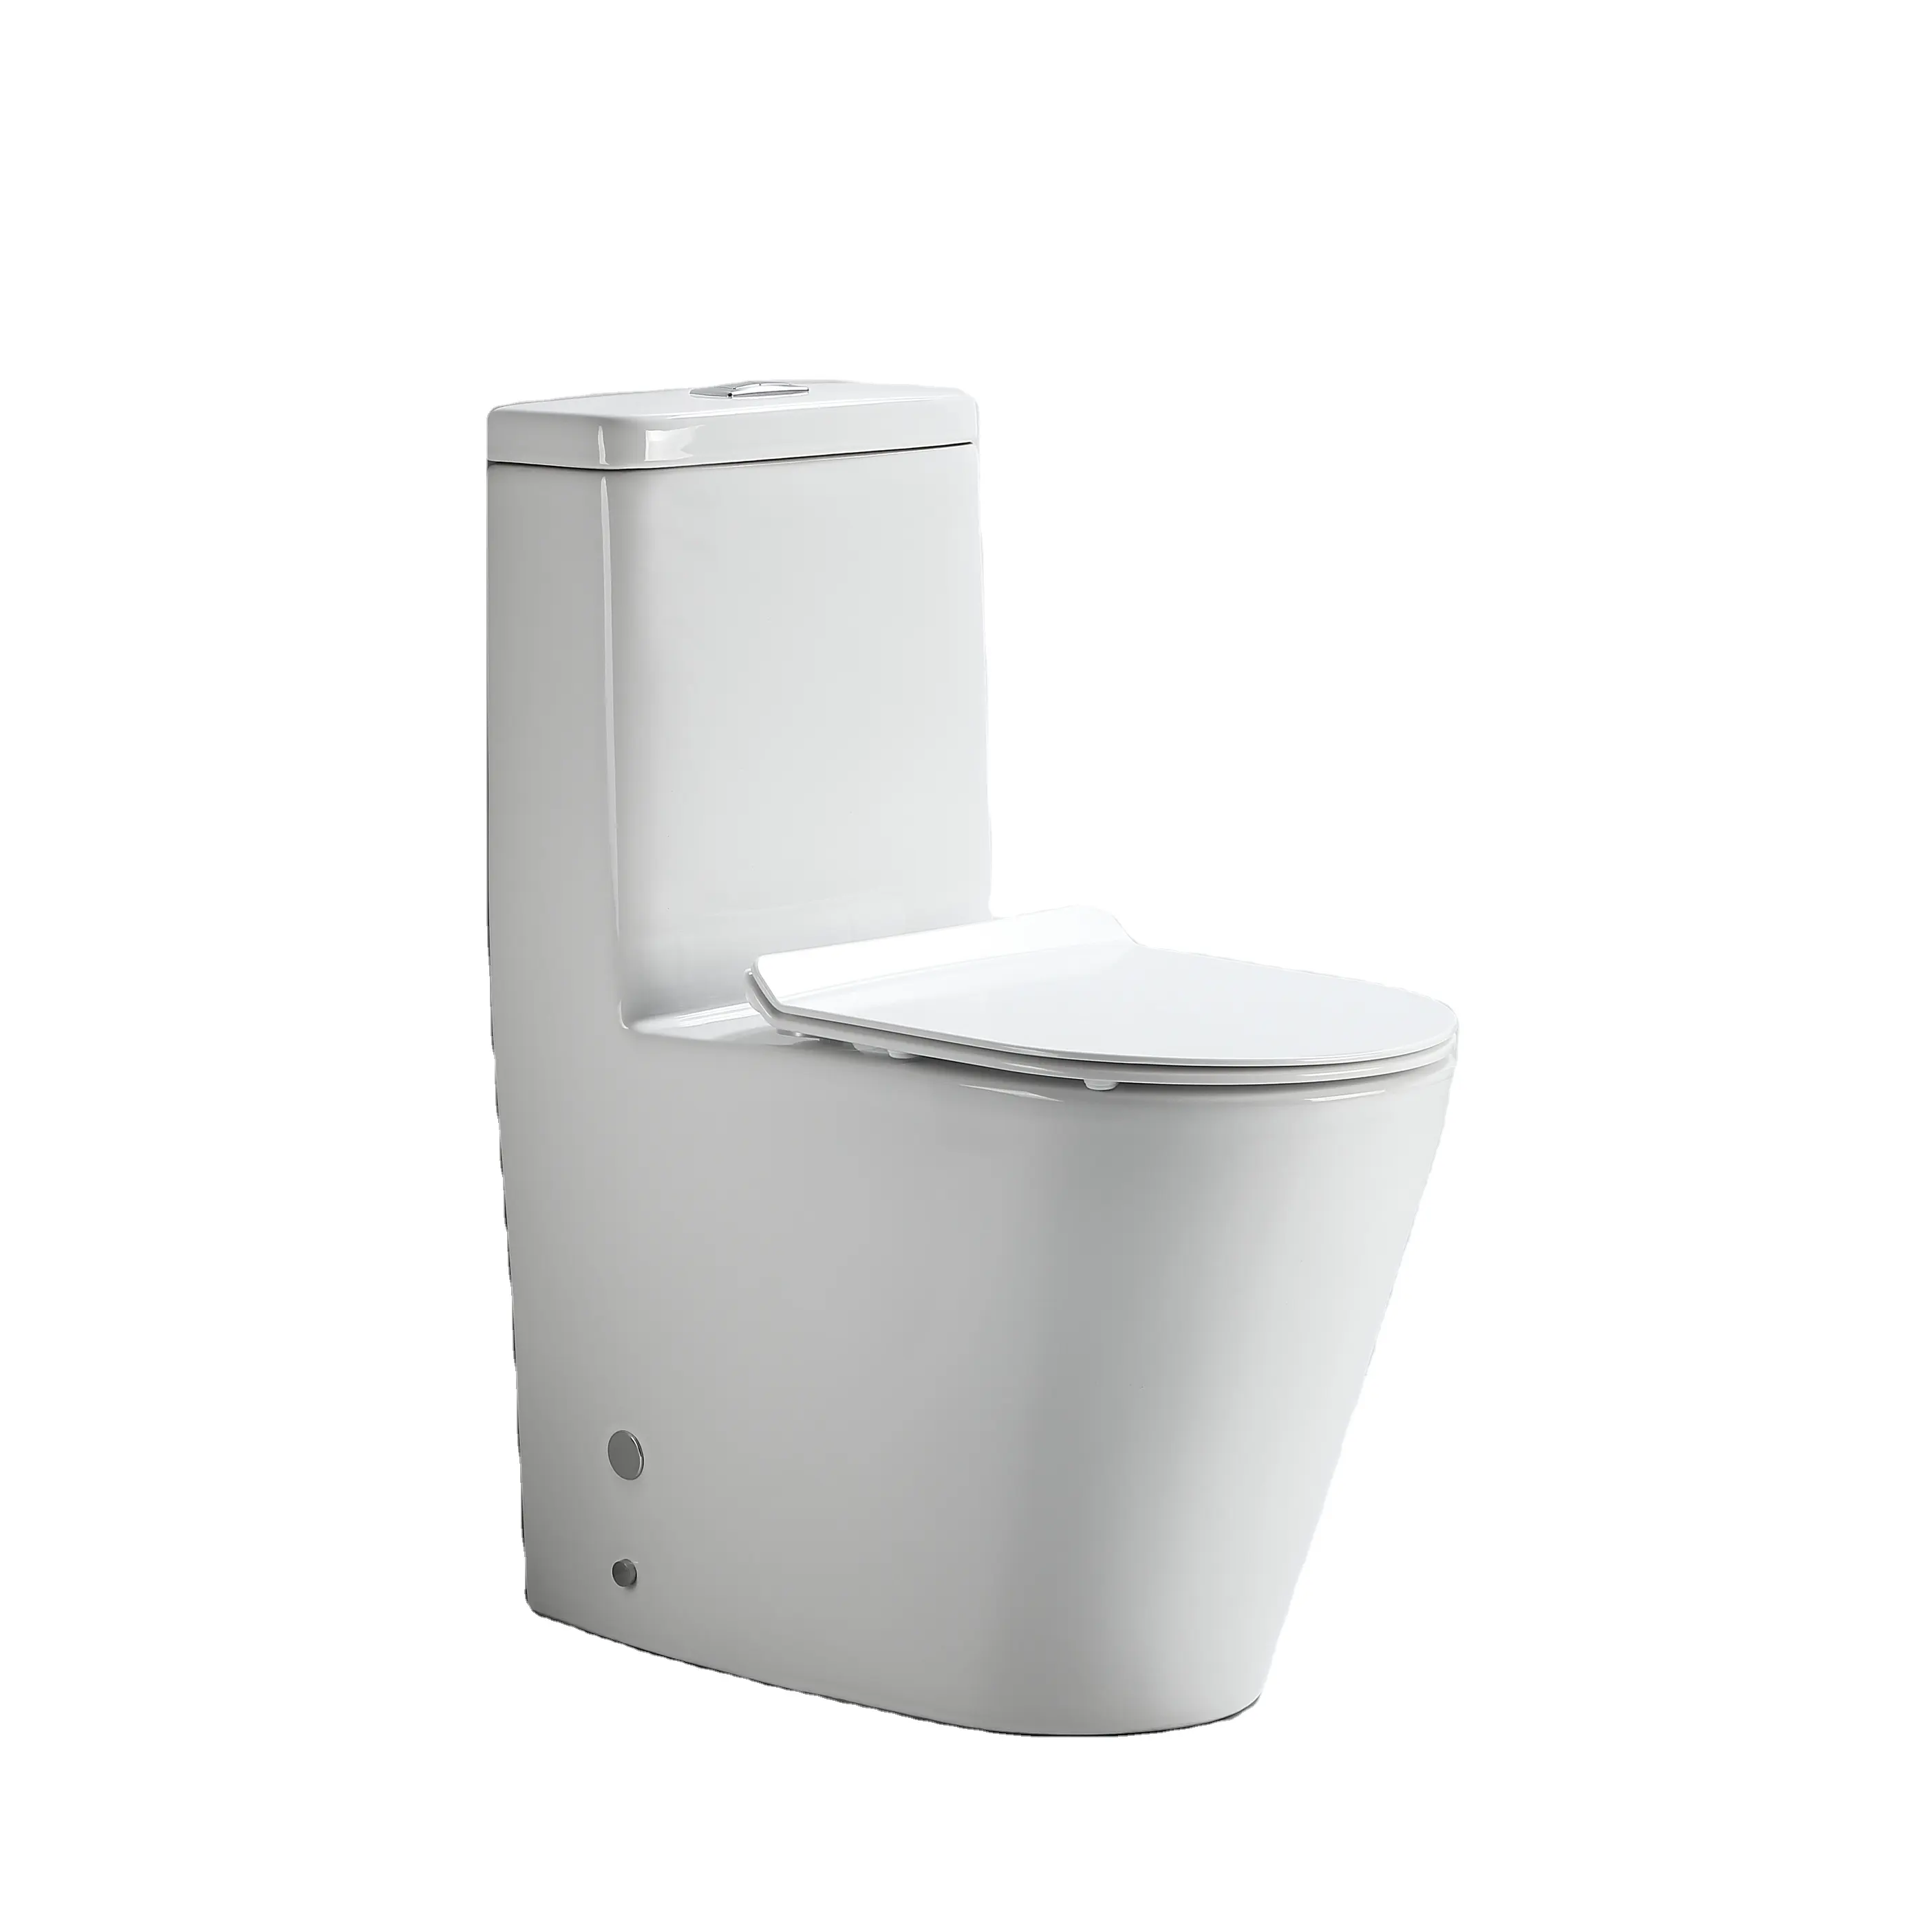 Certificato CE sedile per Bidet in ceramica da bagno di alta qualità washdown One Piece Toilet Price rimless washdowm toilet